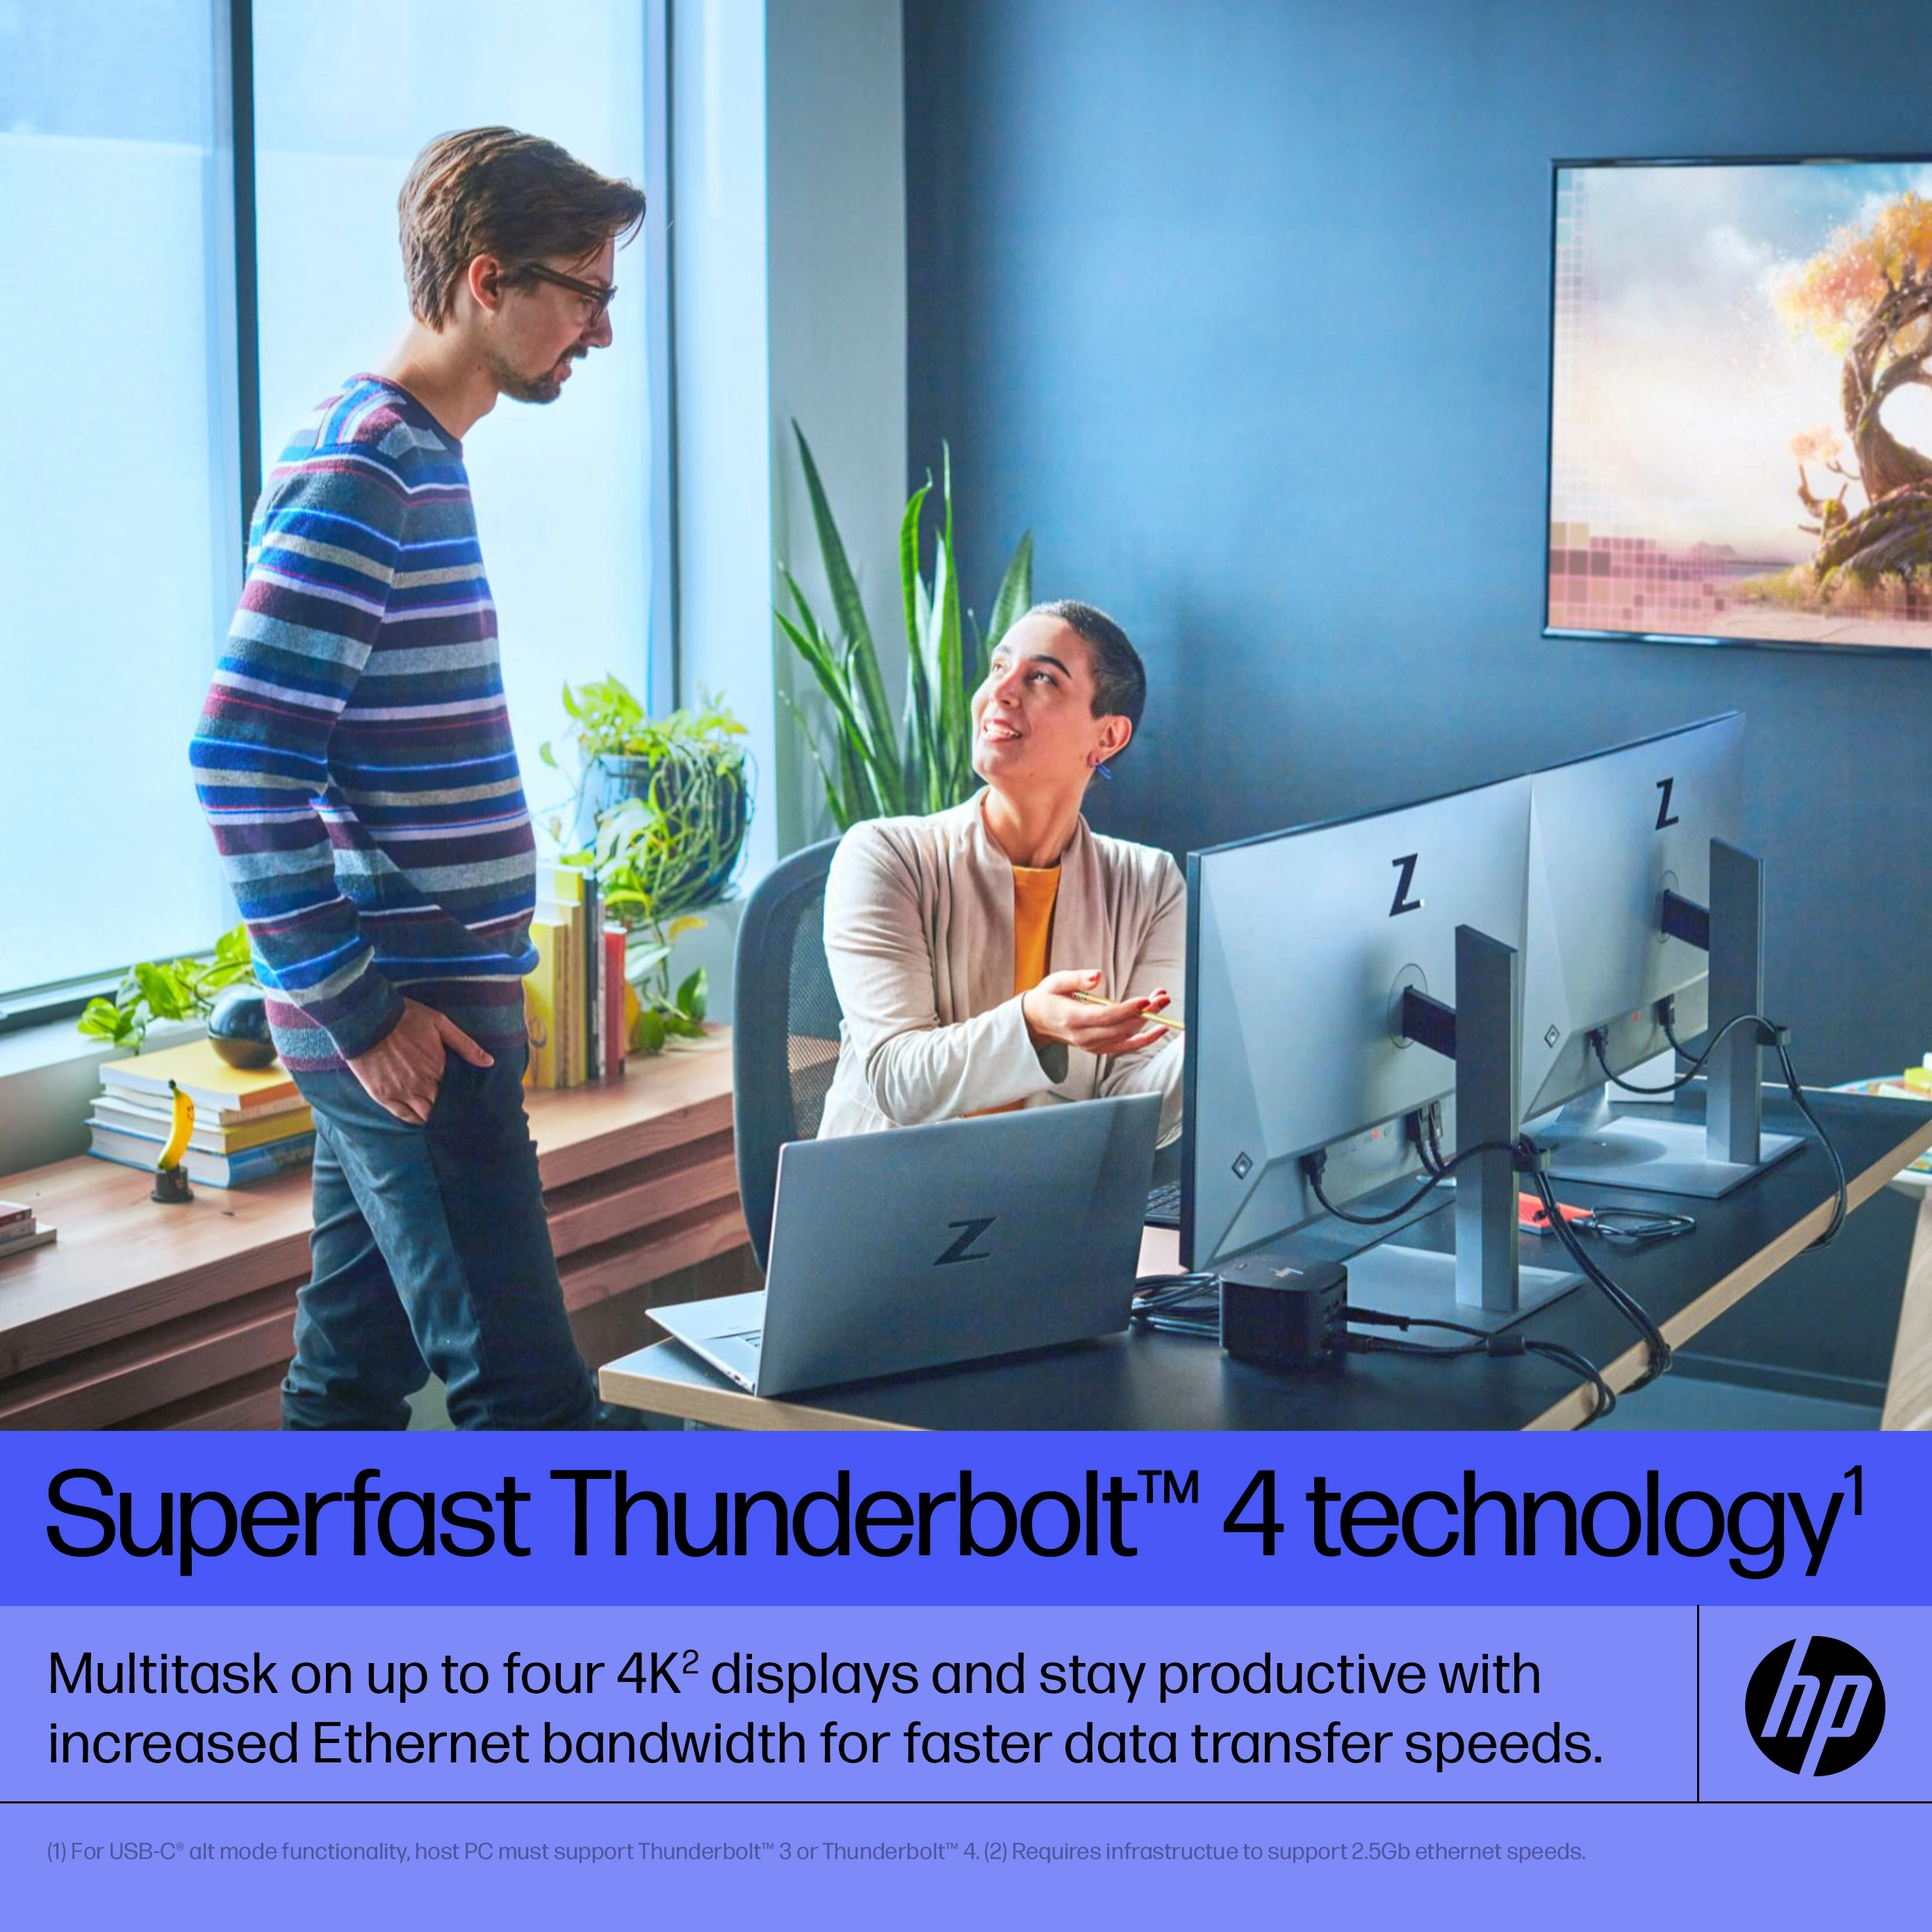 HP Thunderbolt Dock G4 - Dockingstation - USB-C / Thunderbolt 4